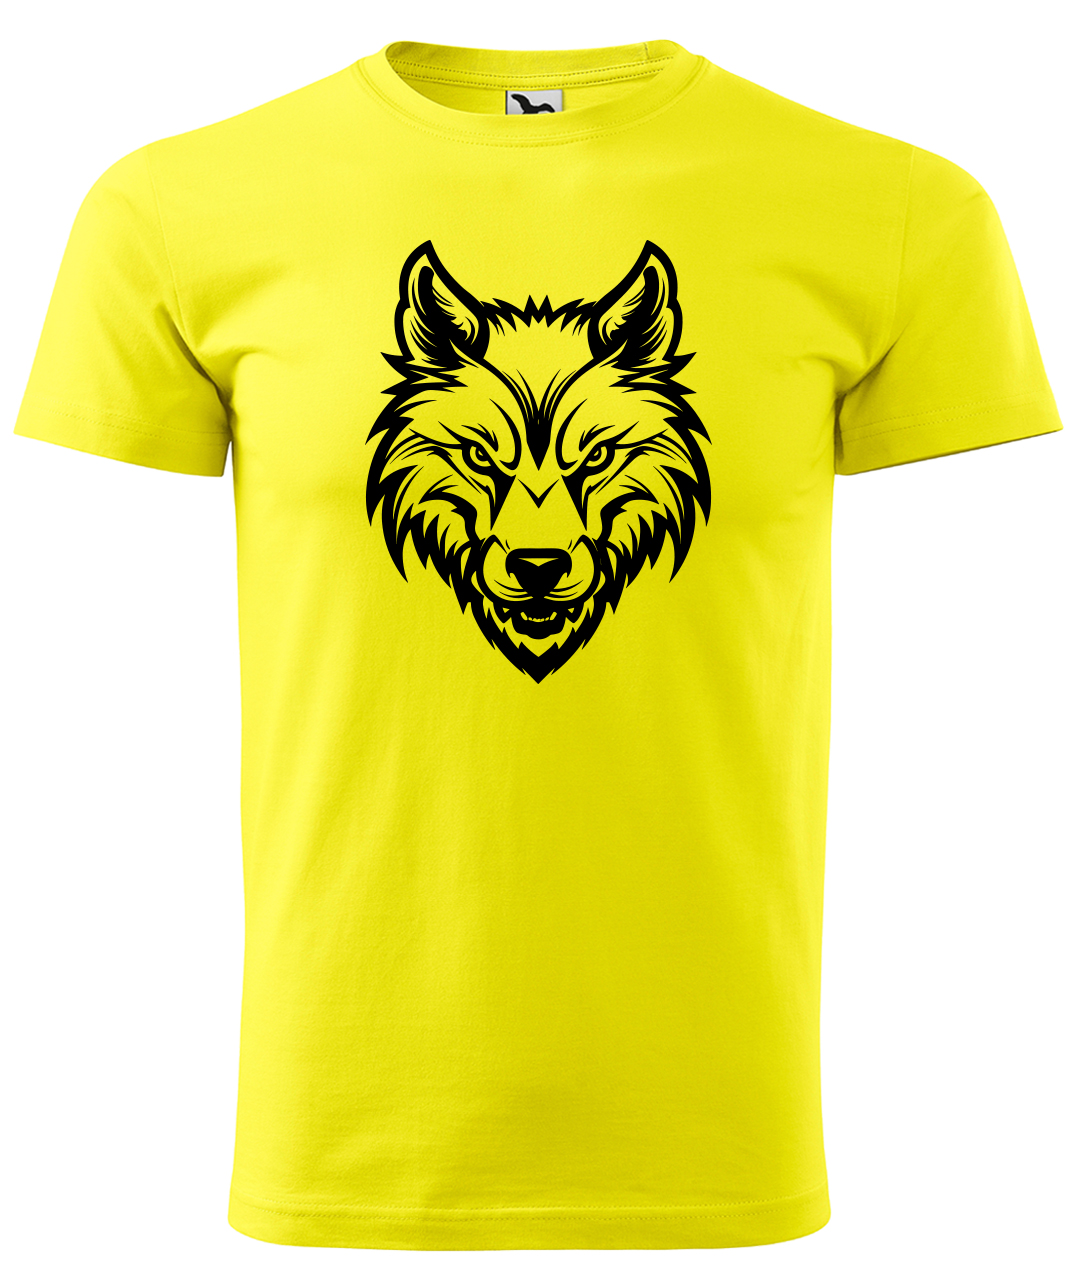 Dětské tričko s vlkem - Alfa samec Velikost: 4 roky / 110 cm, Barva: Žlutá (04), Délka rukávu: Krátký rukáv